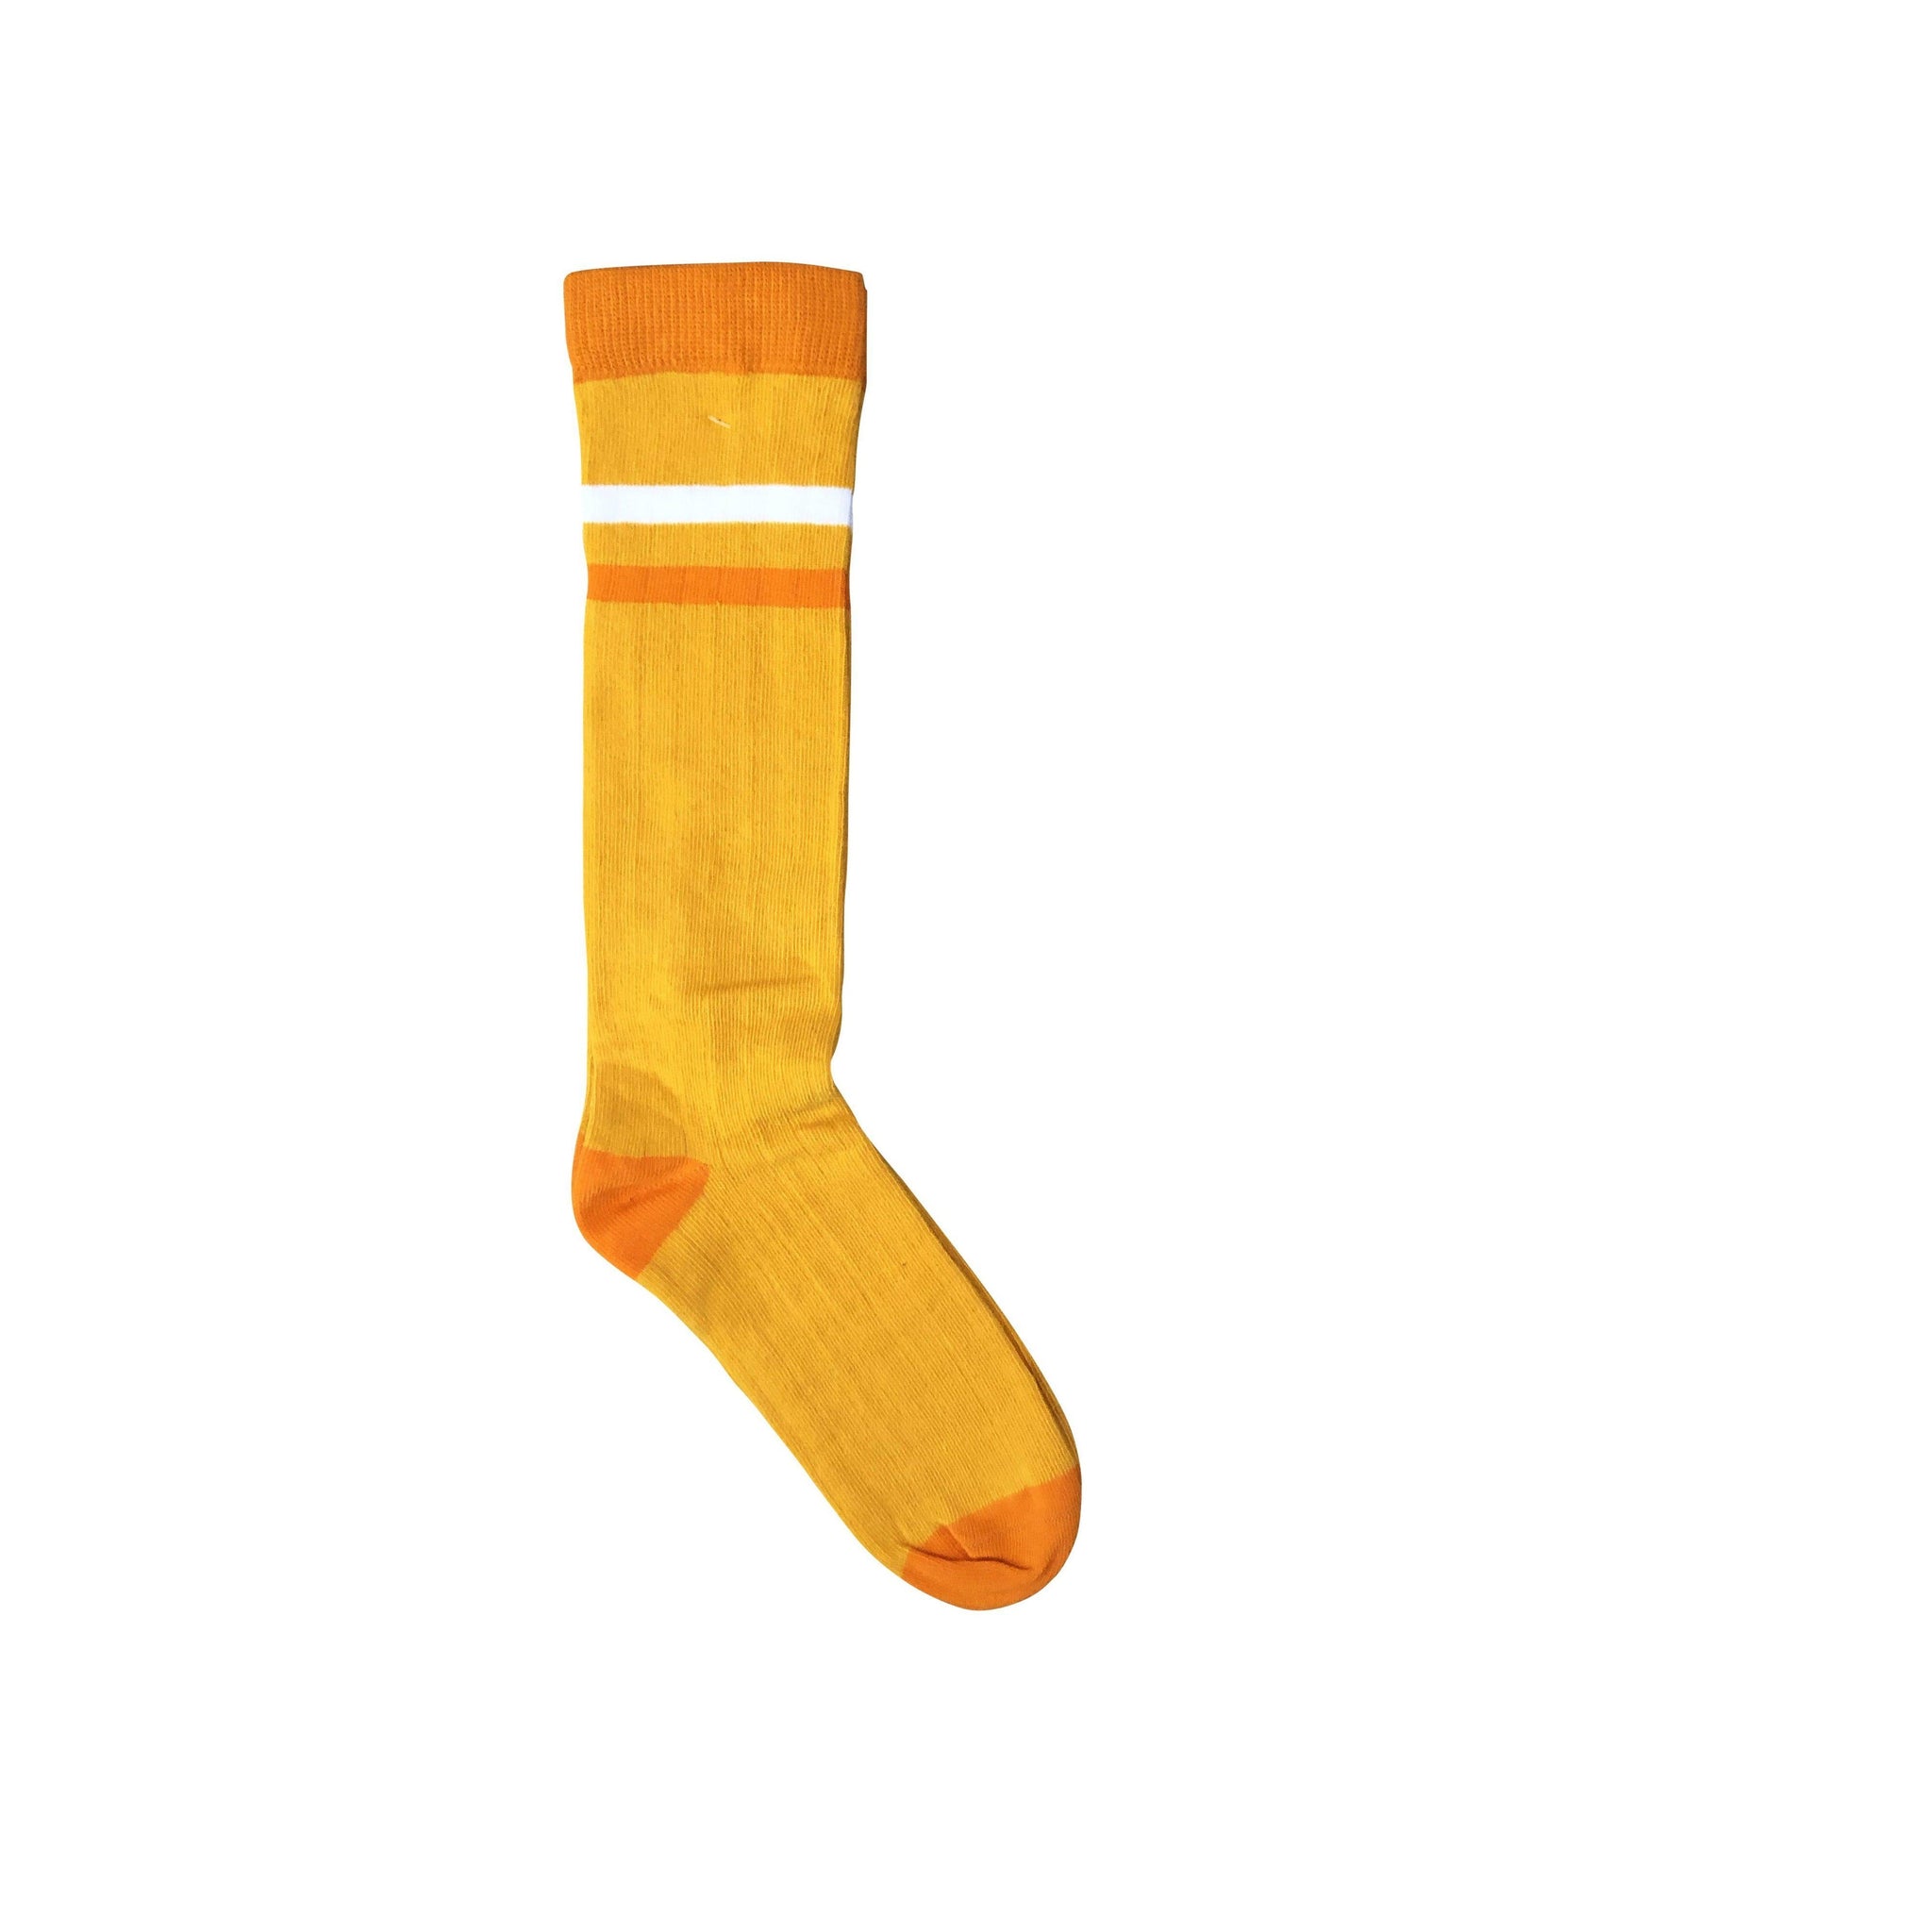 Moromini - Yellow Ribbed Tube Socks